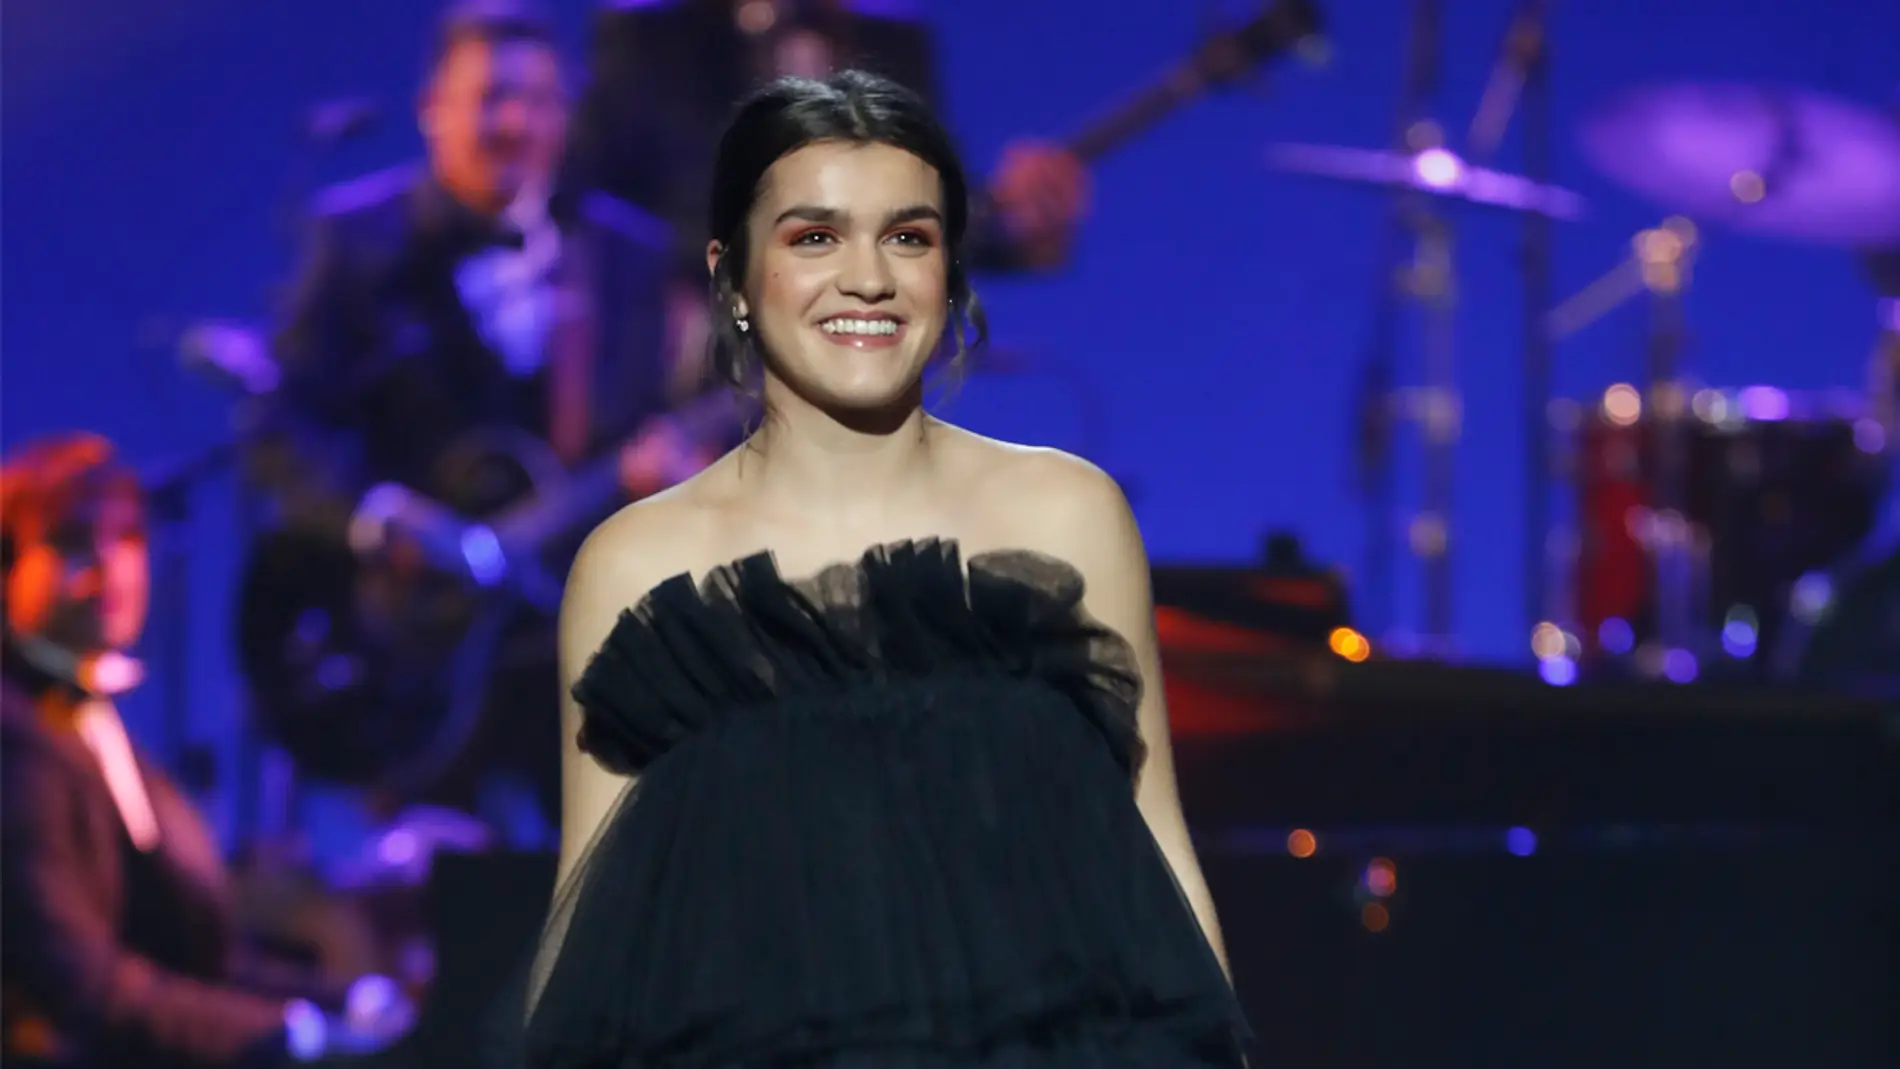 Amaia durante su actuación en los Premios Goya 2019